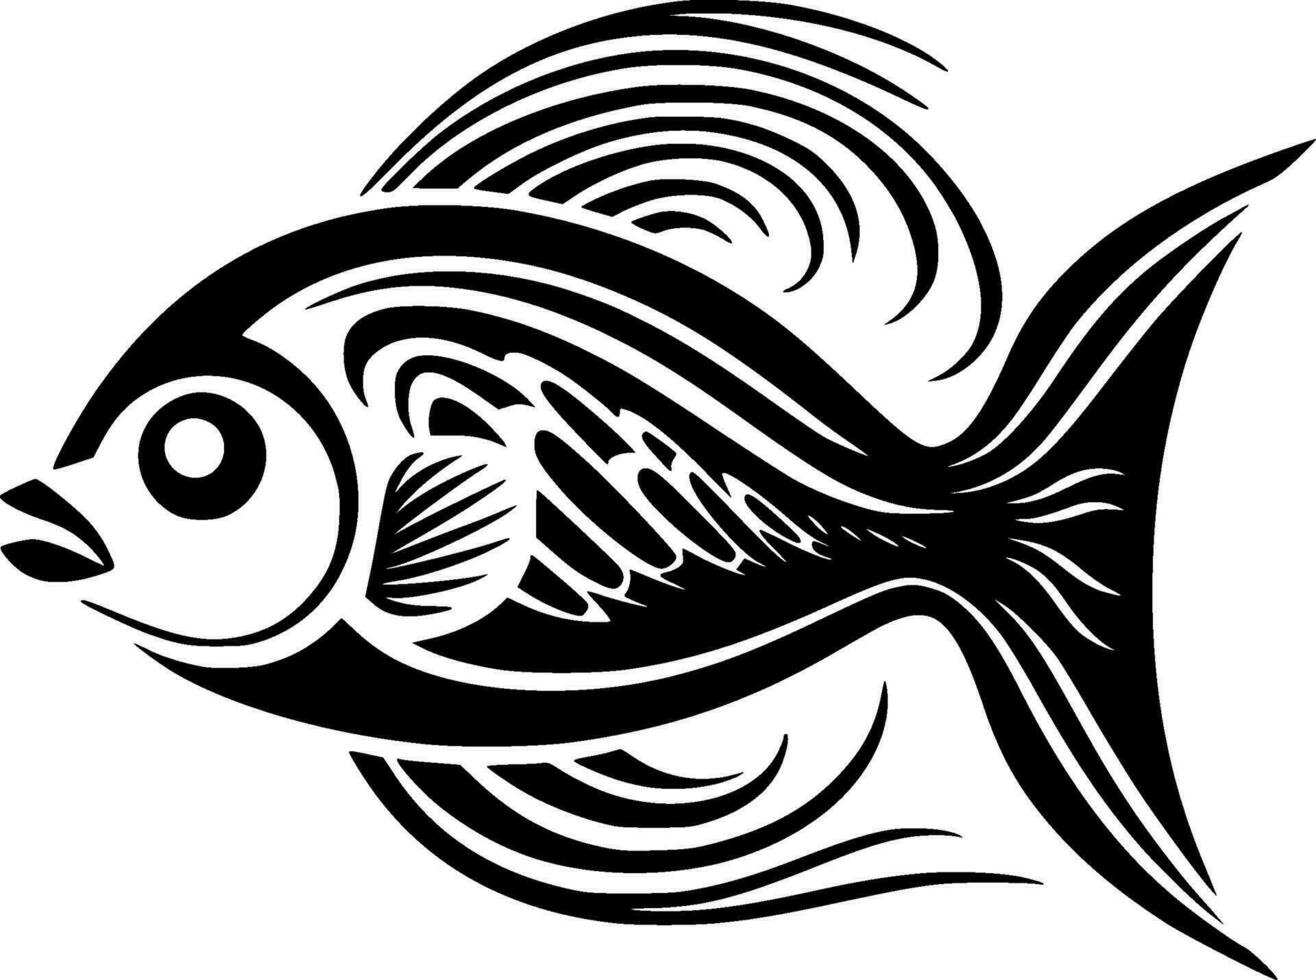 fisk - hög kvalitet vektor logotyp - vektor illustration idealisk för t-shirt grafisk